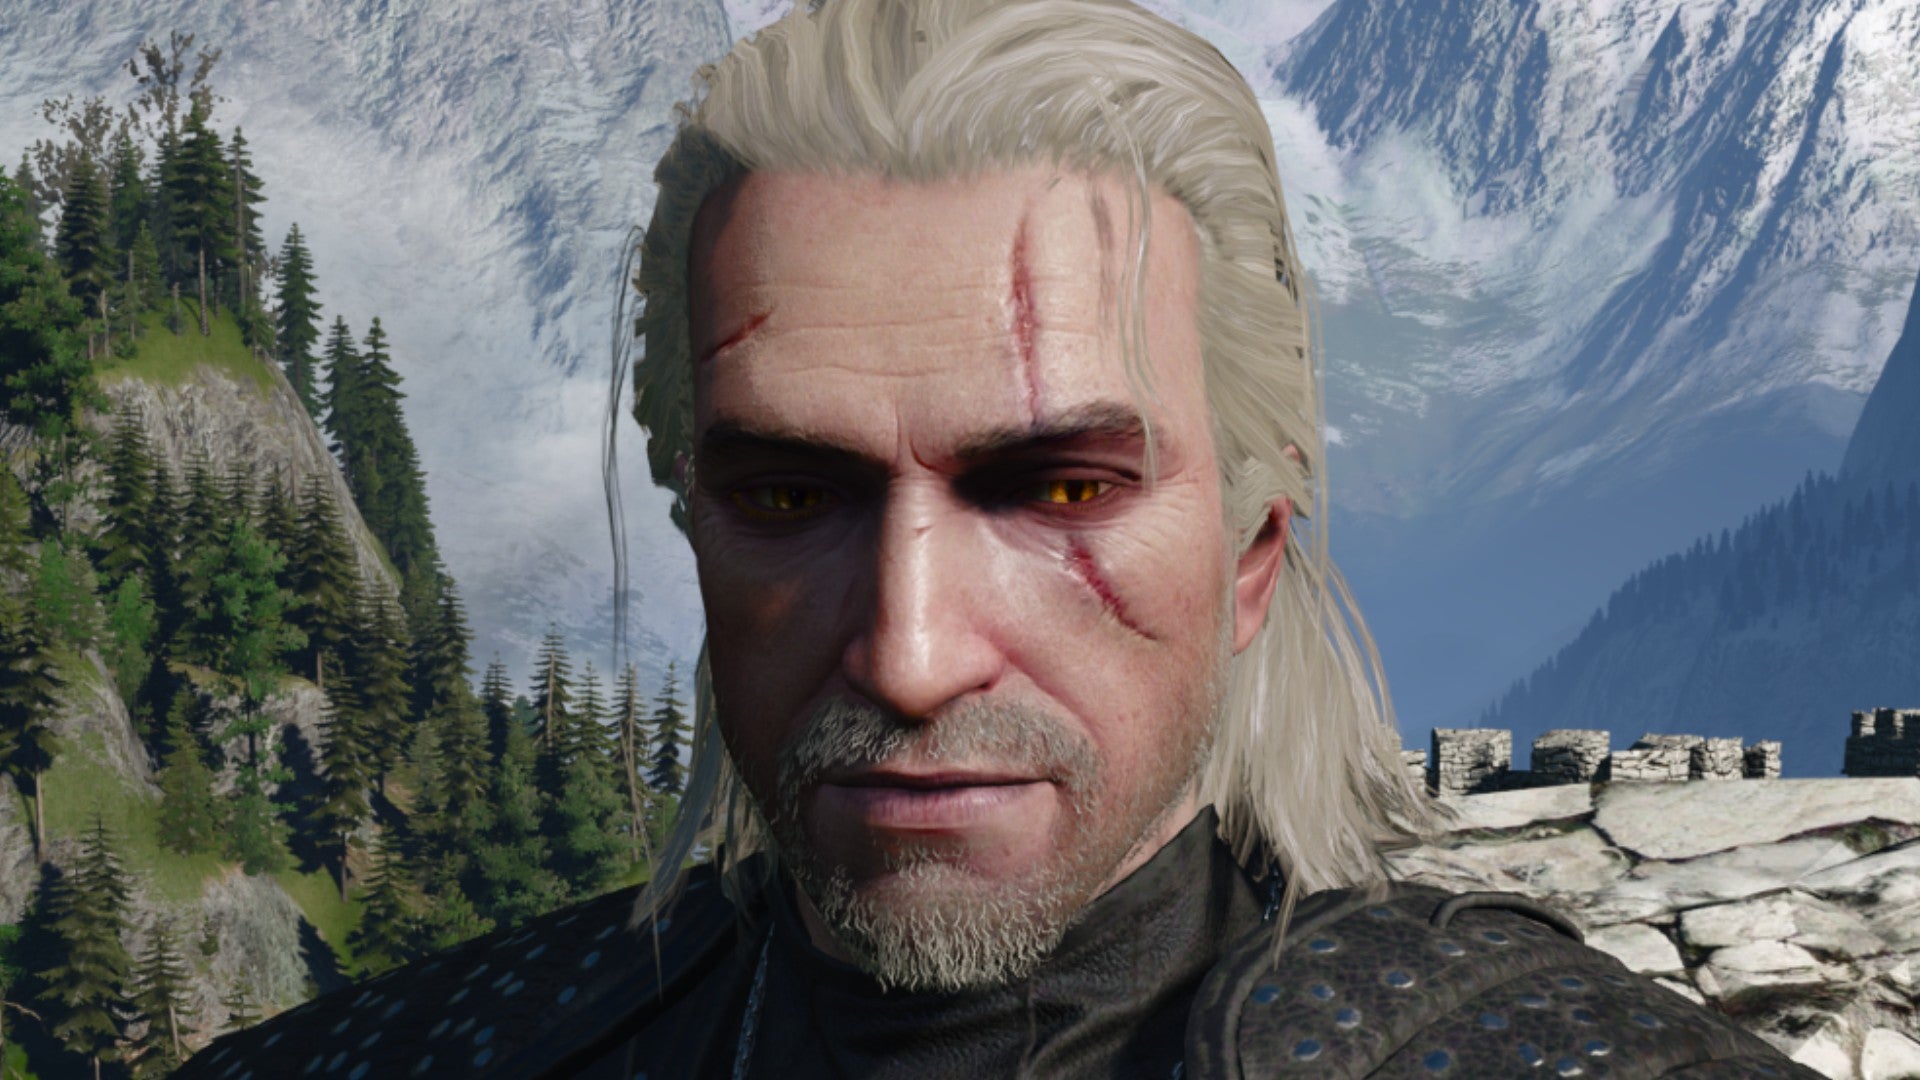 Imagen de Witcher 3 que muestra a Geralt con barba corta.